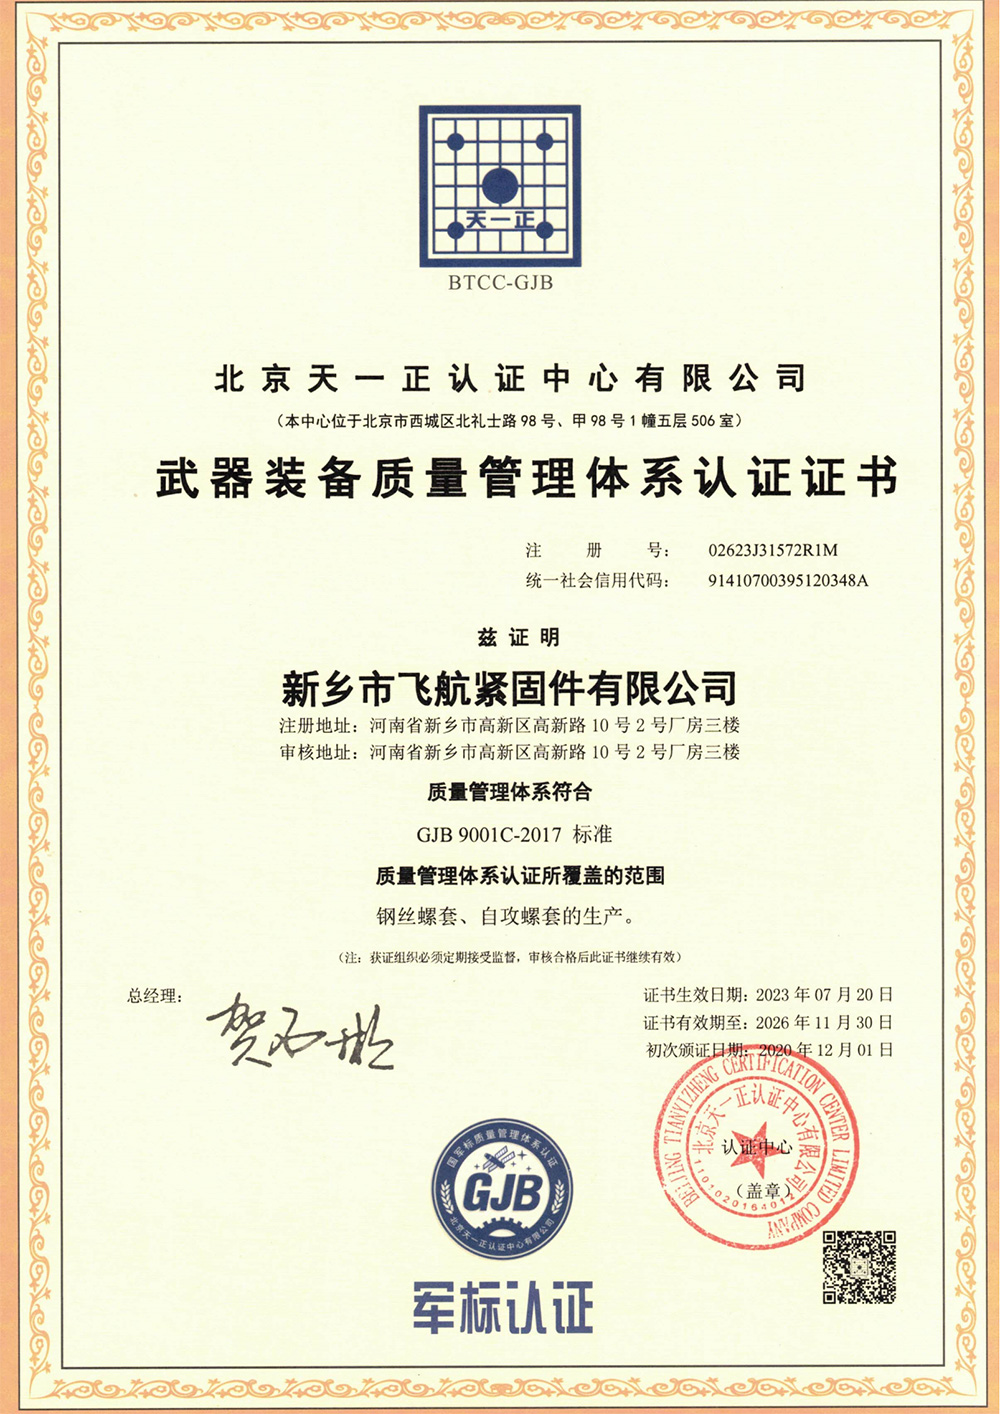 сертификат3dcx